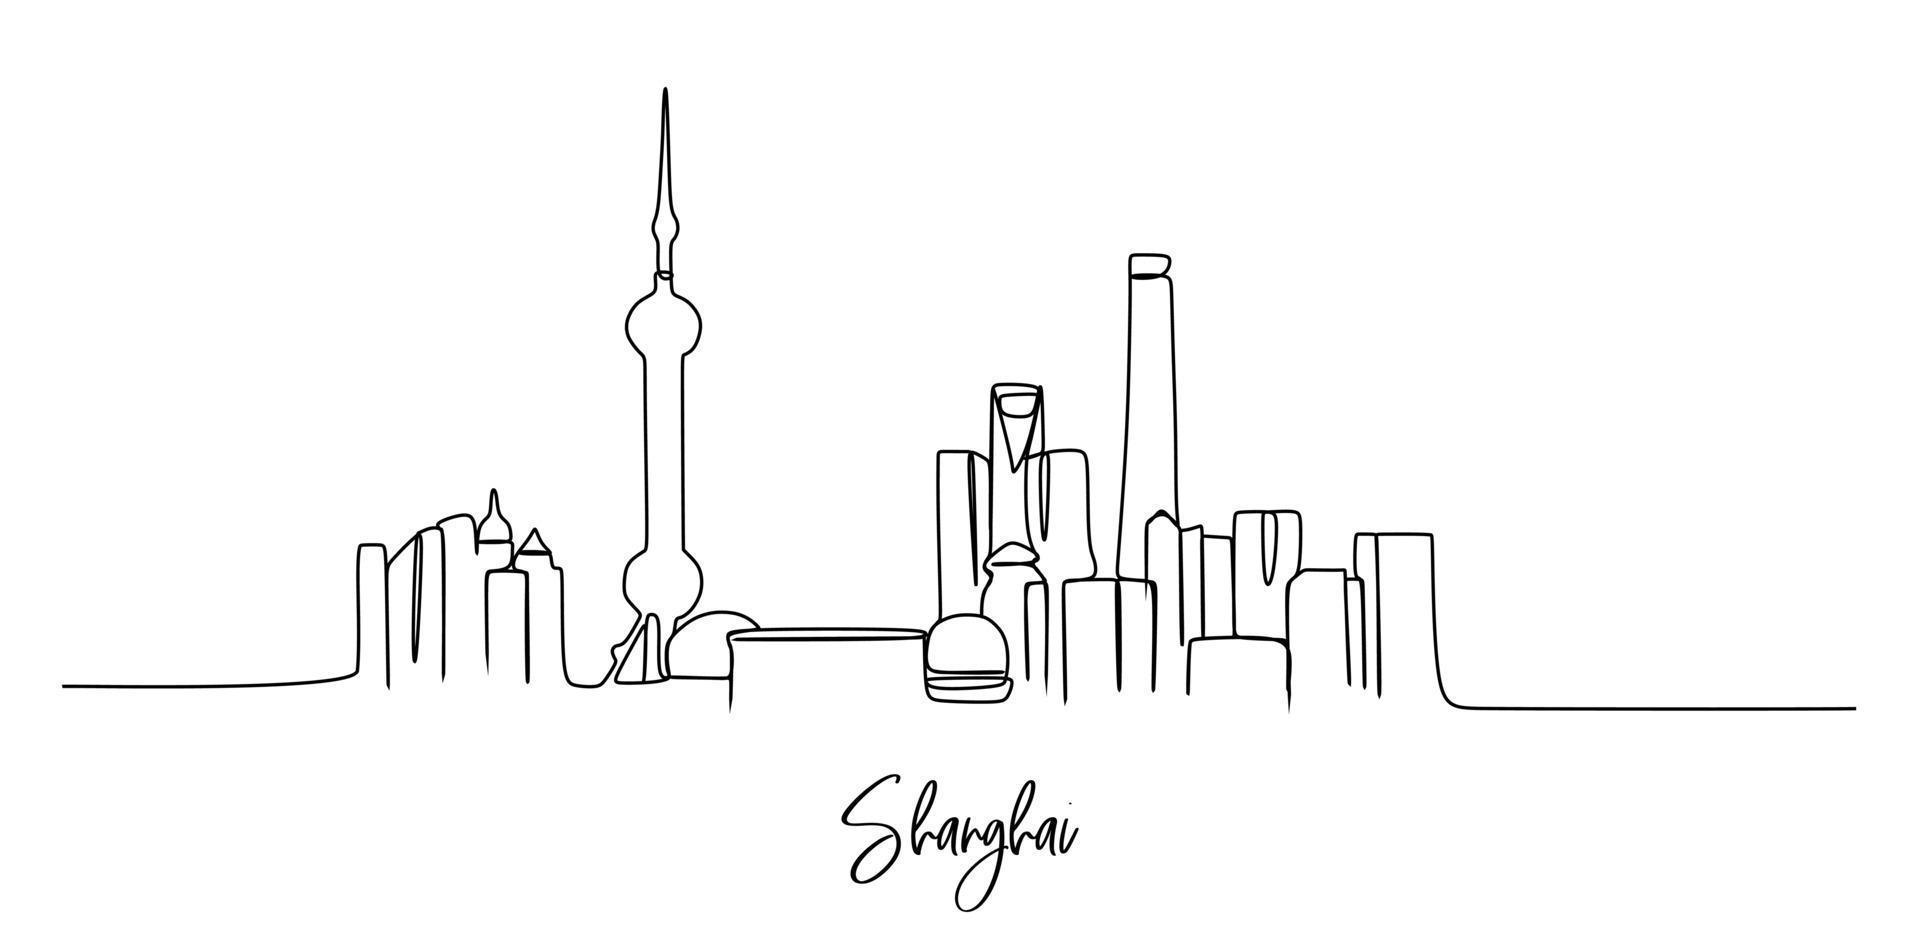 un dibujo de una sola línea del horizonte de la ciudad de Shangai, China. paisaje histórico de la ciudad en el mundo. mejor destino de vacaciones. trazo editable moda línea continua dibujar diseño gráfico vectorial ilustración vector